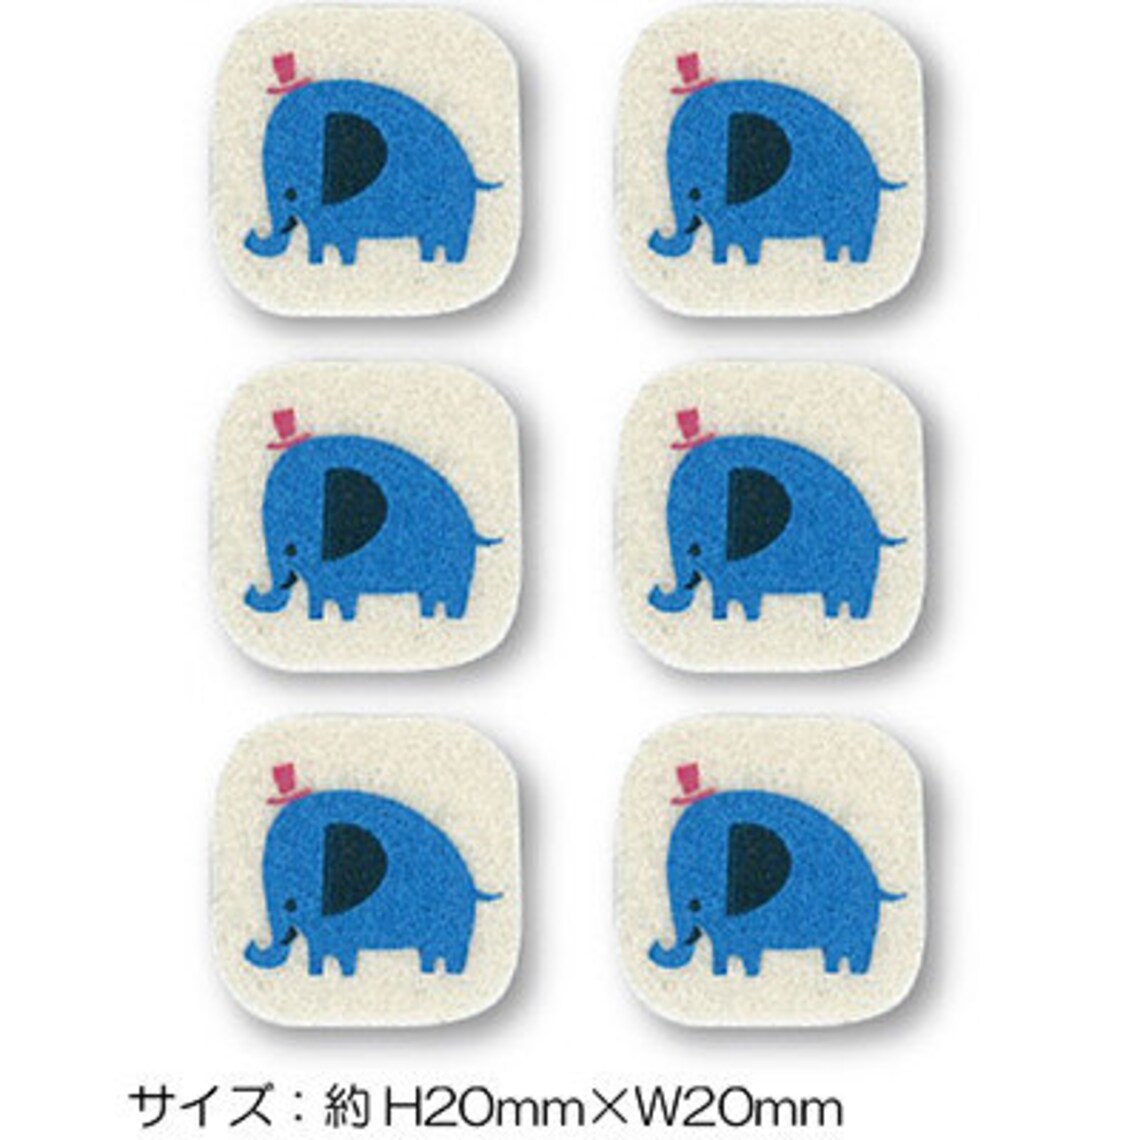 Elephant Iron-on Applique Iron-on Patch Mini size x 6 pieces